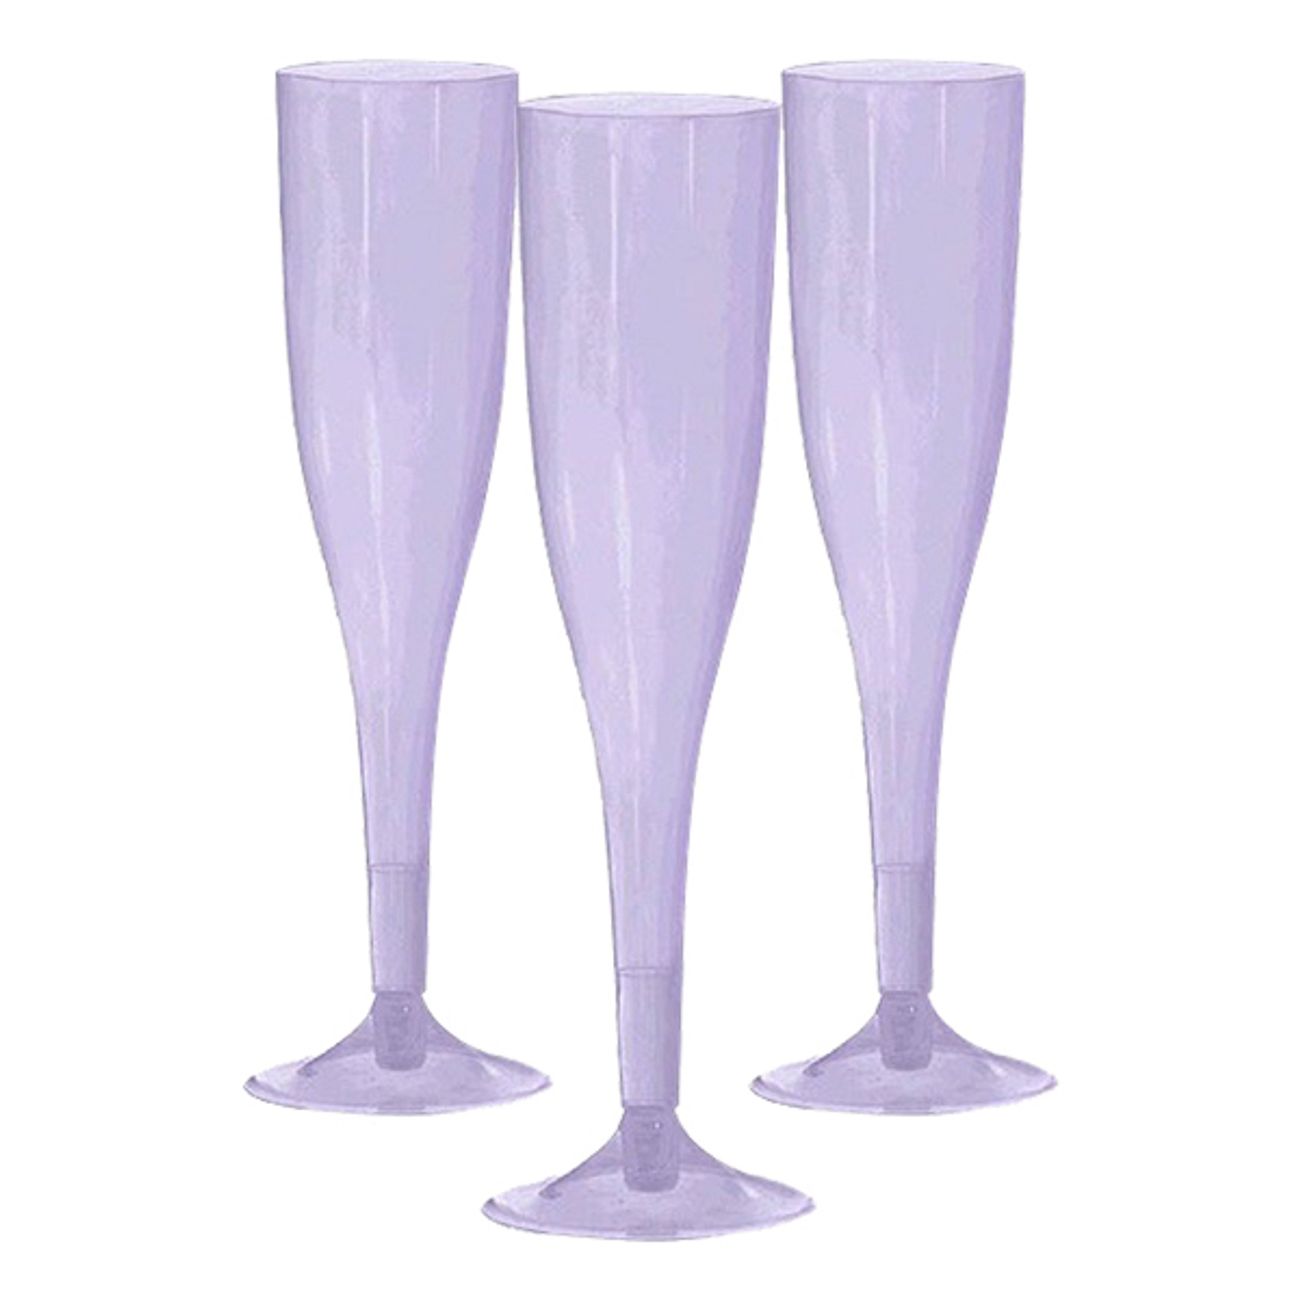 champagneglas-av-plast-ljuslila-1